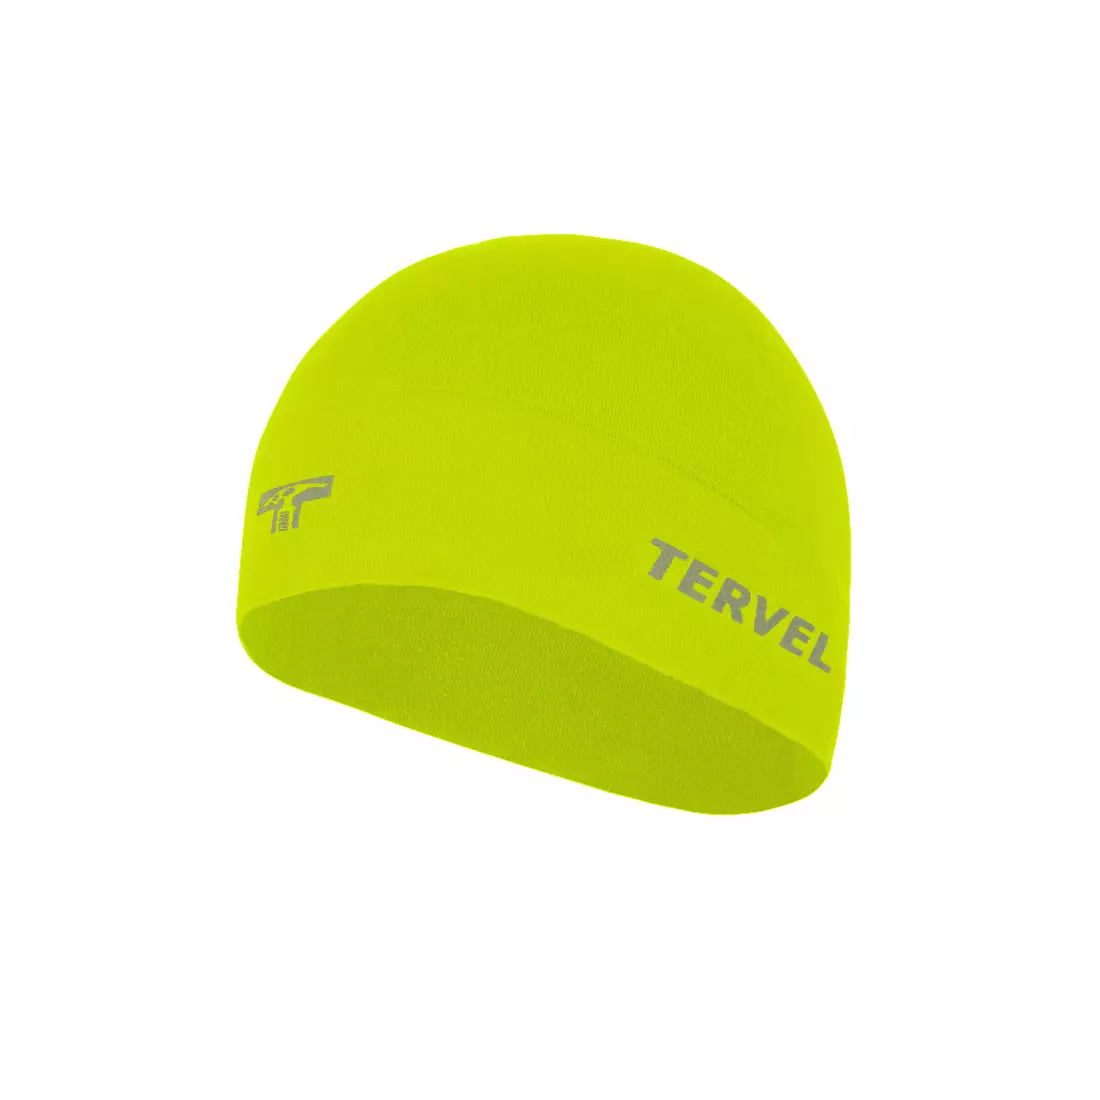 TERVEL 7001 - COMFORTLINE - tréninková čepice, barva: Fluor, velikost: Univerzální